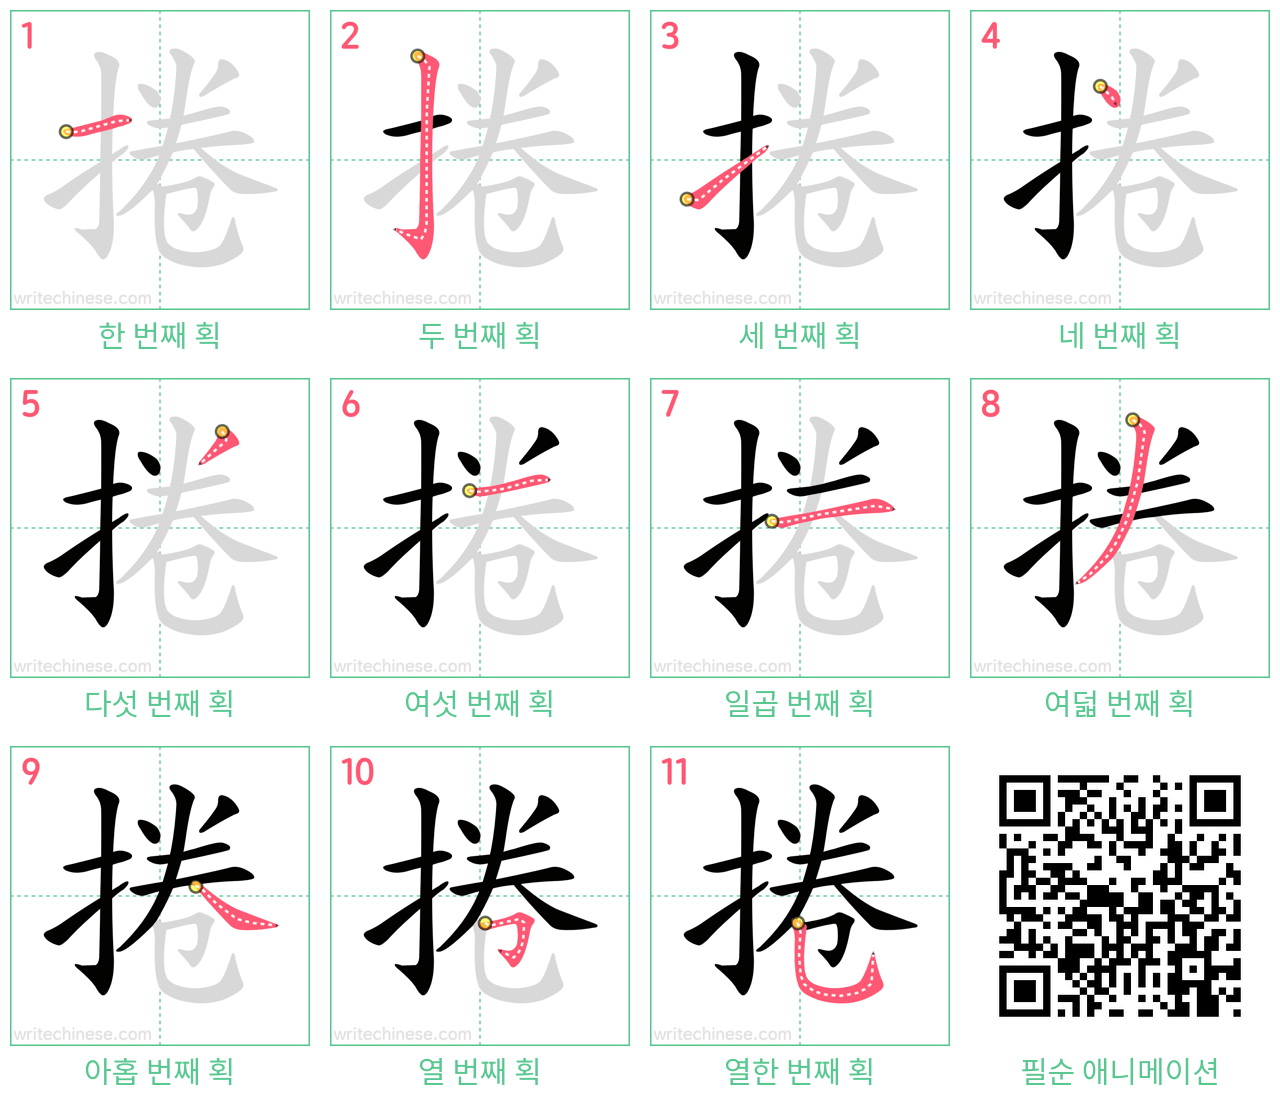 捲 step-by-step stroke order diagrams